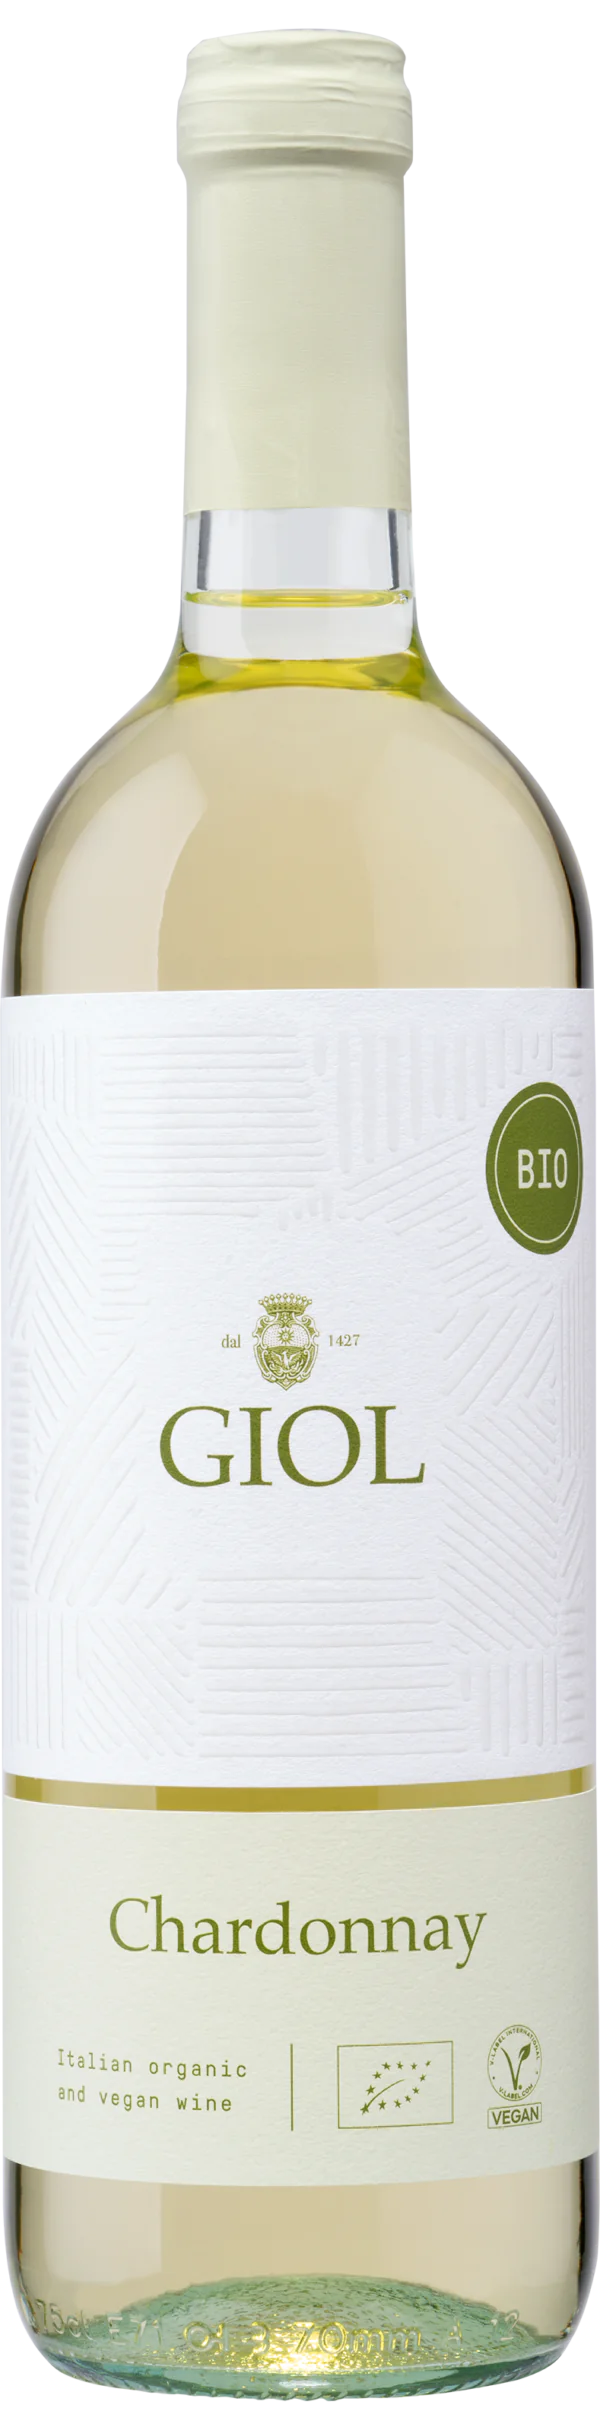 Chardonnay - Giol